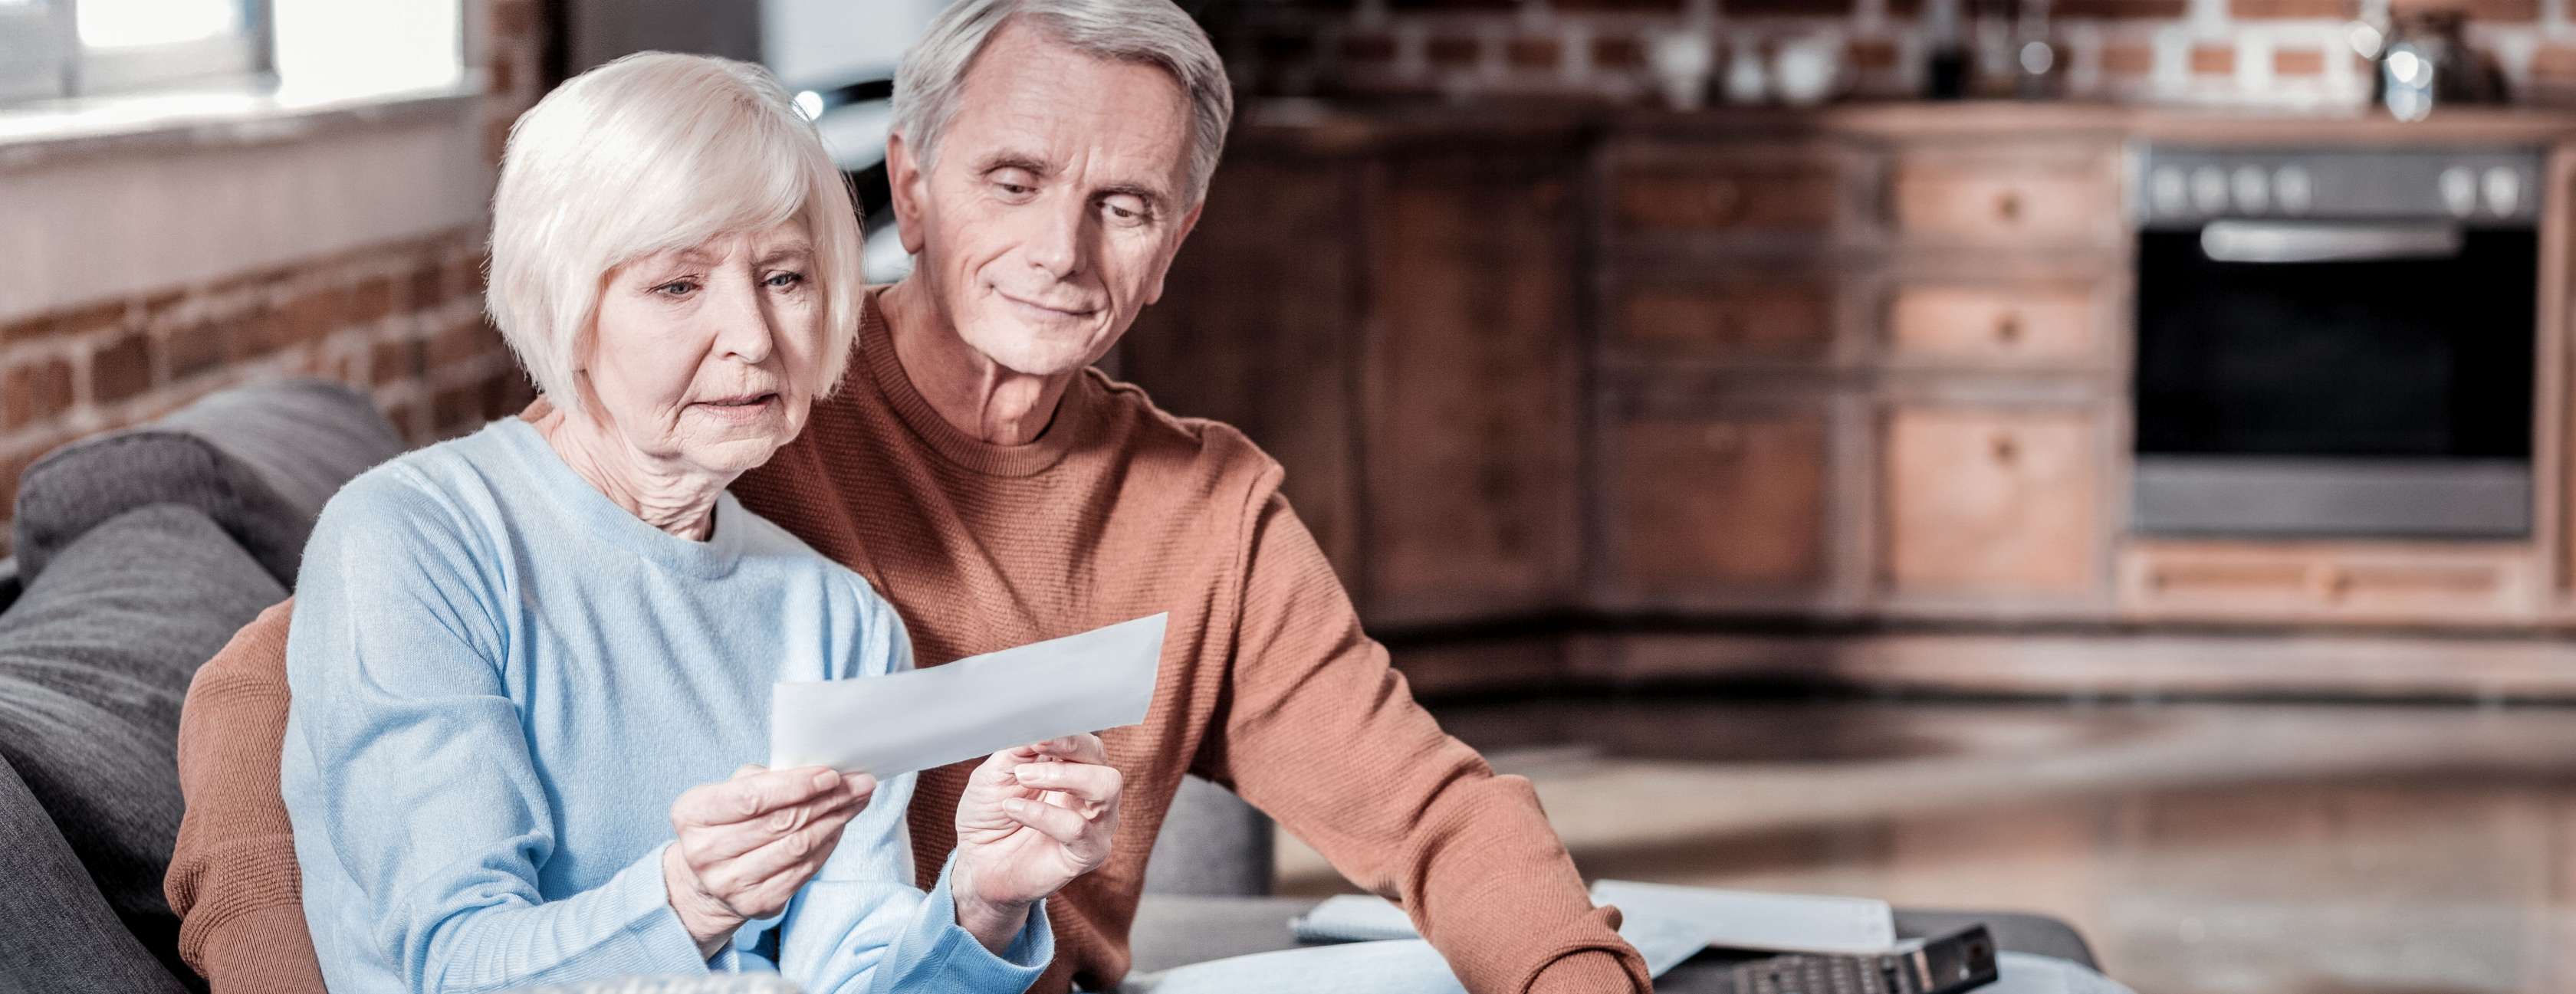 Älteres Paar auf einem Sofa schaut gemeinsam ein Dokument zu Pflegeheim-Kosten an.